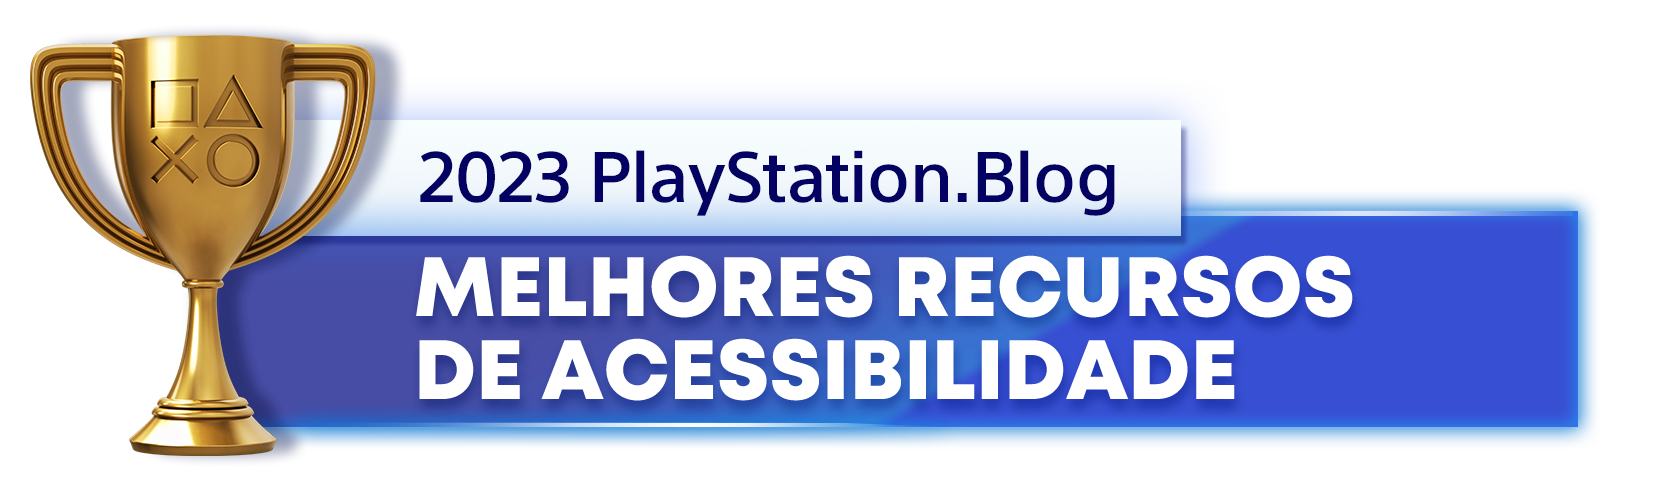  "Troféu de Ouro para o vencedor da categoria Melhores Recursos de Acessibilidade de 2023 do PlayStation Blog"